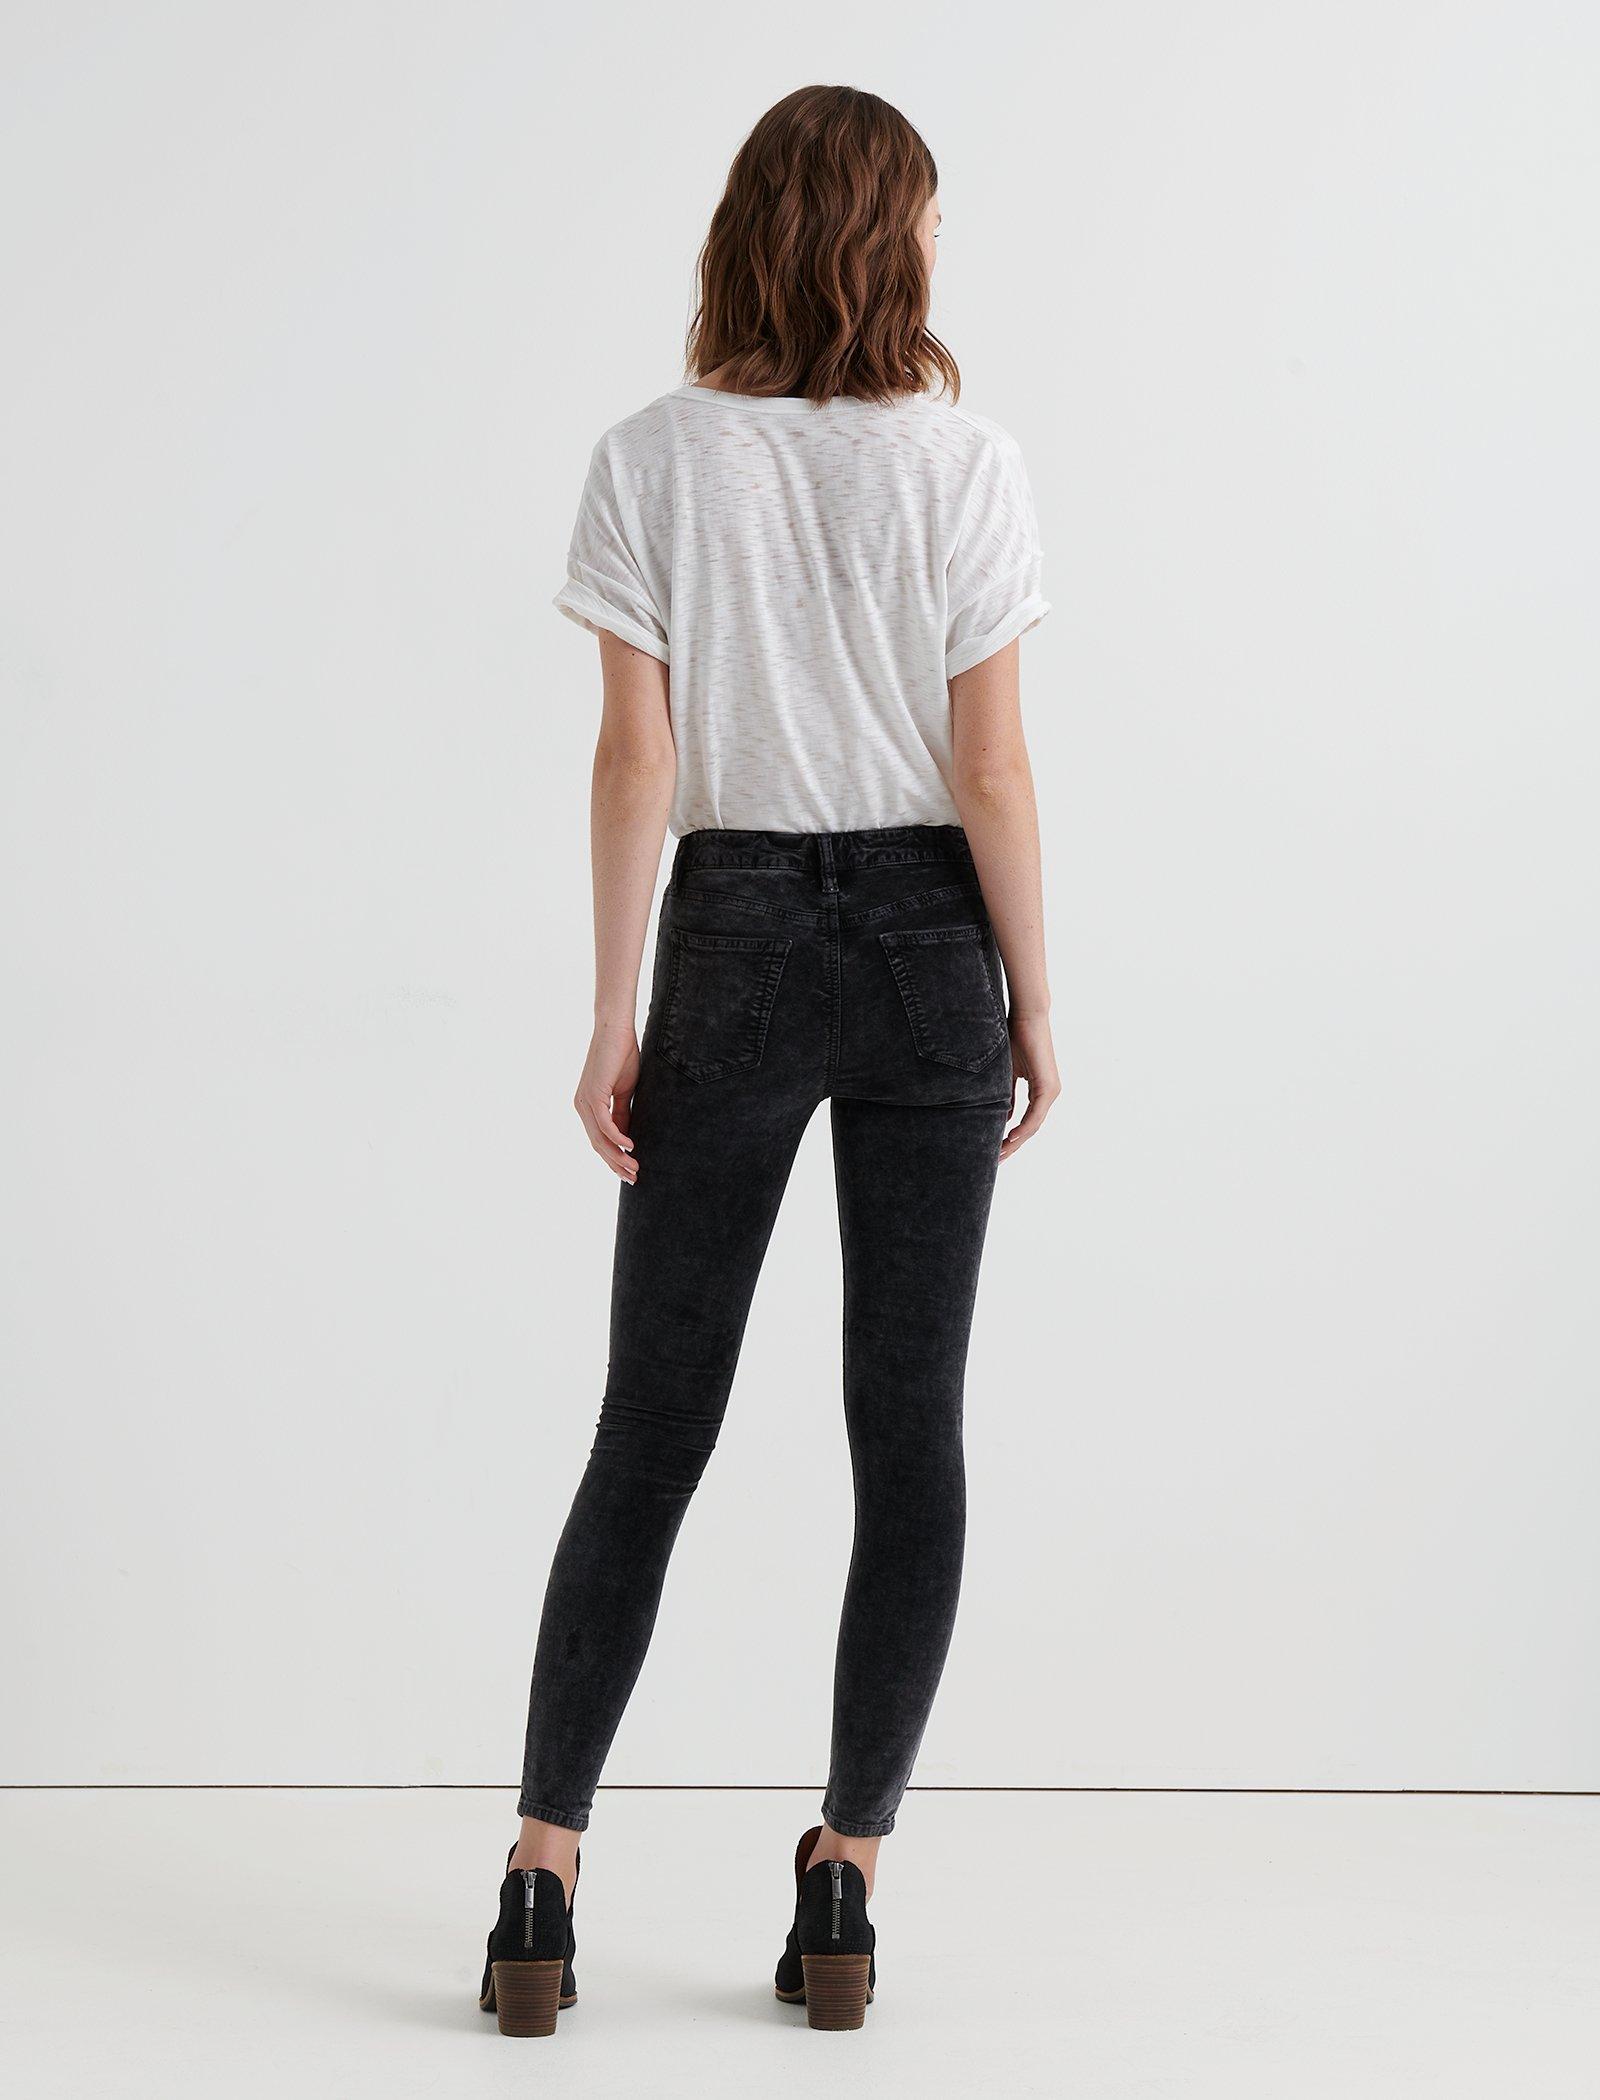 Lucky Brand Pants Women's Size 4 X 27 Black Ava Super Skinny Velvet  Mid-Rise.